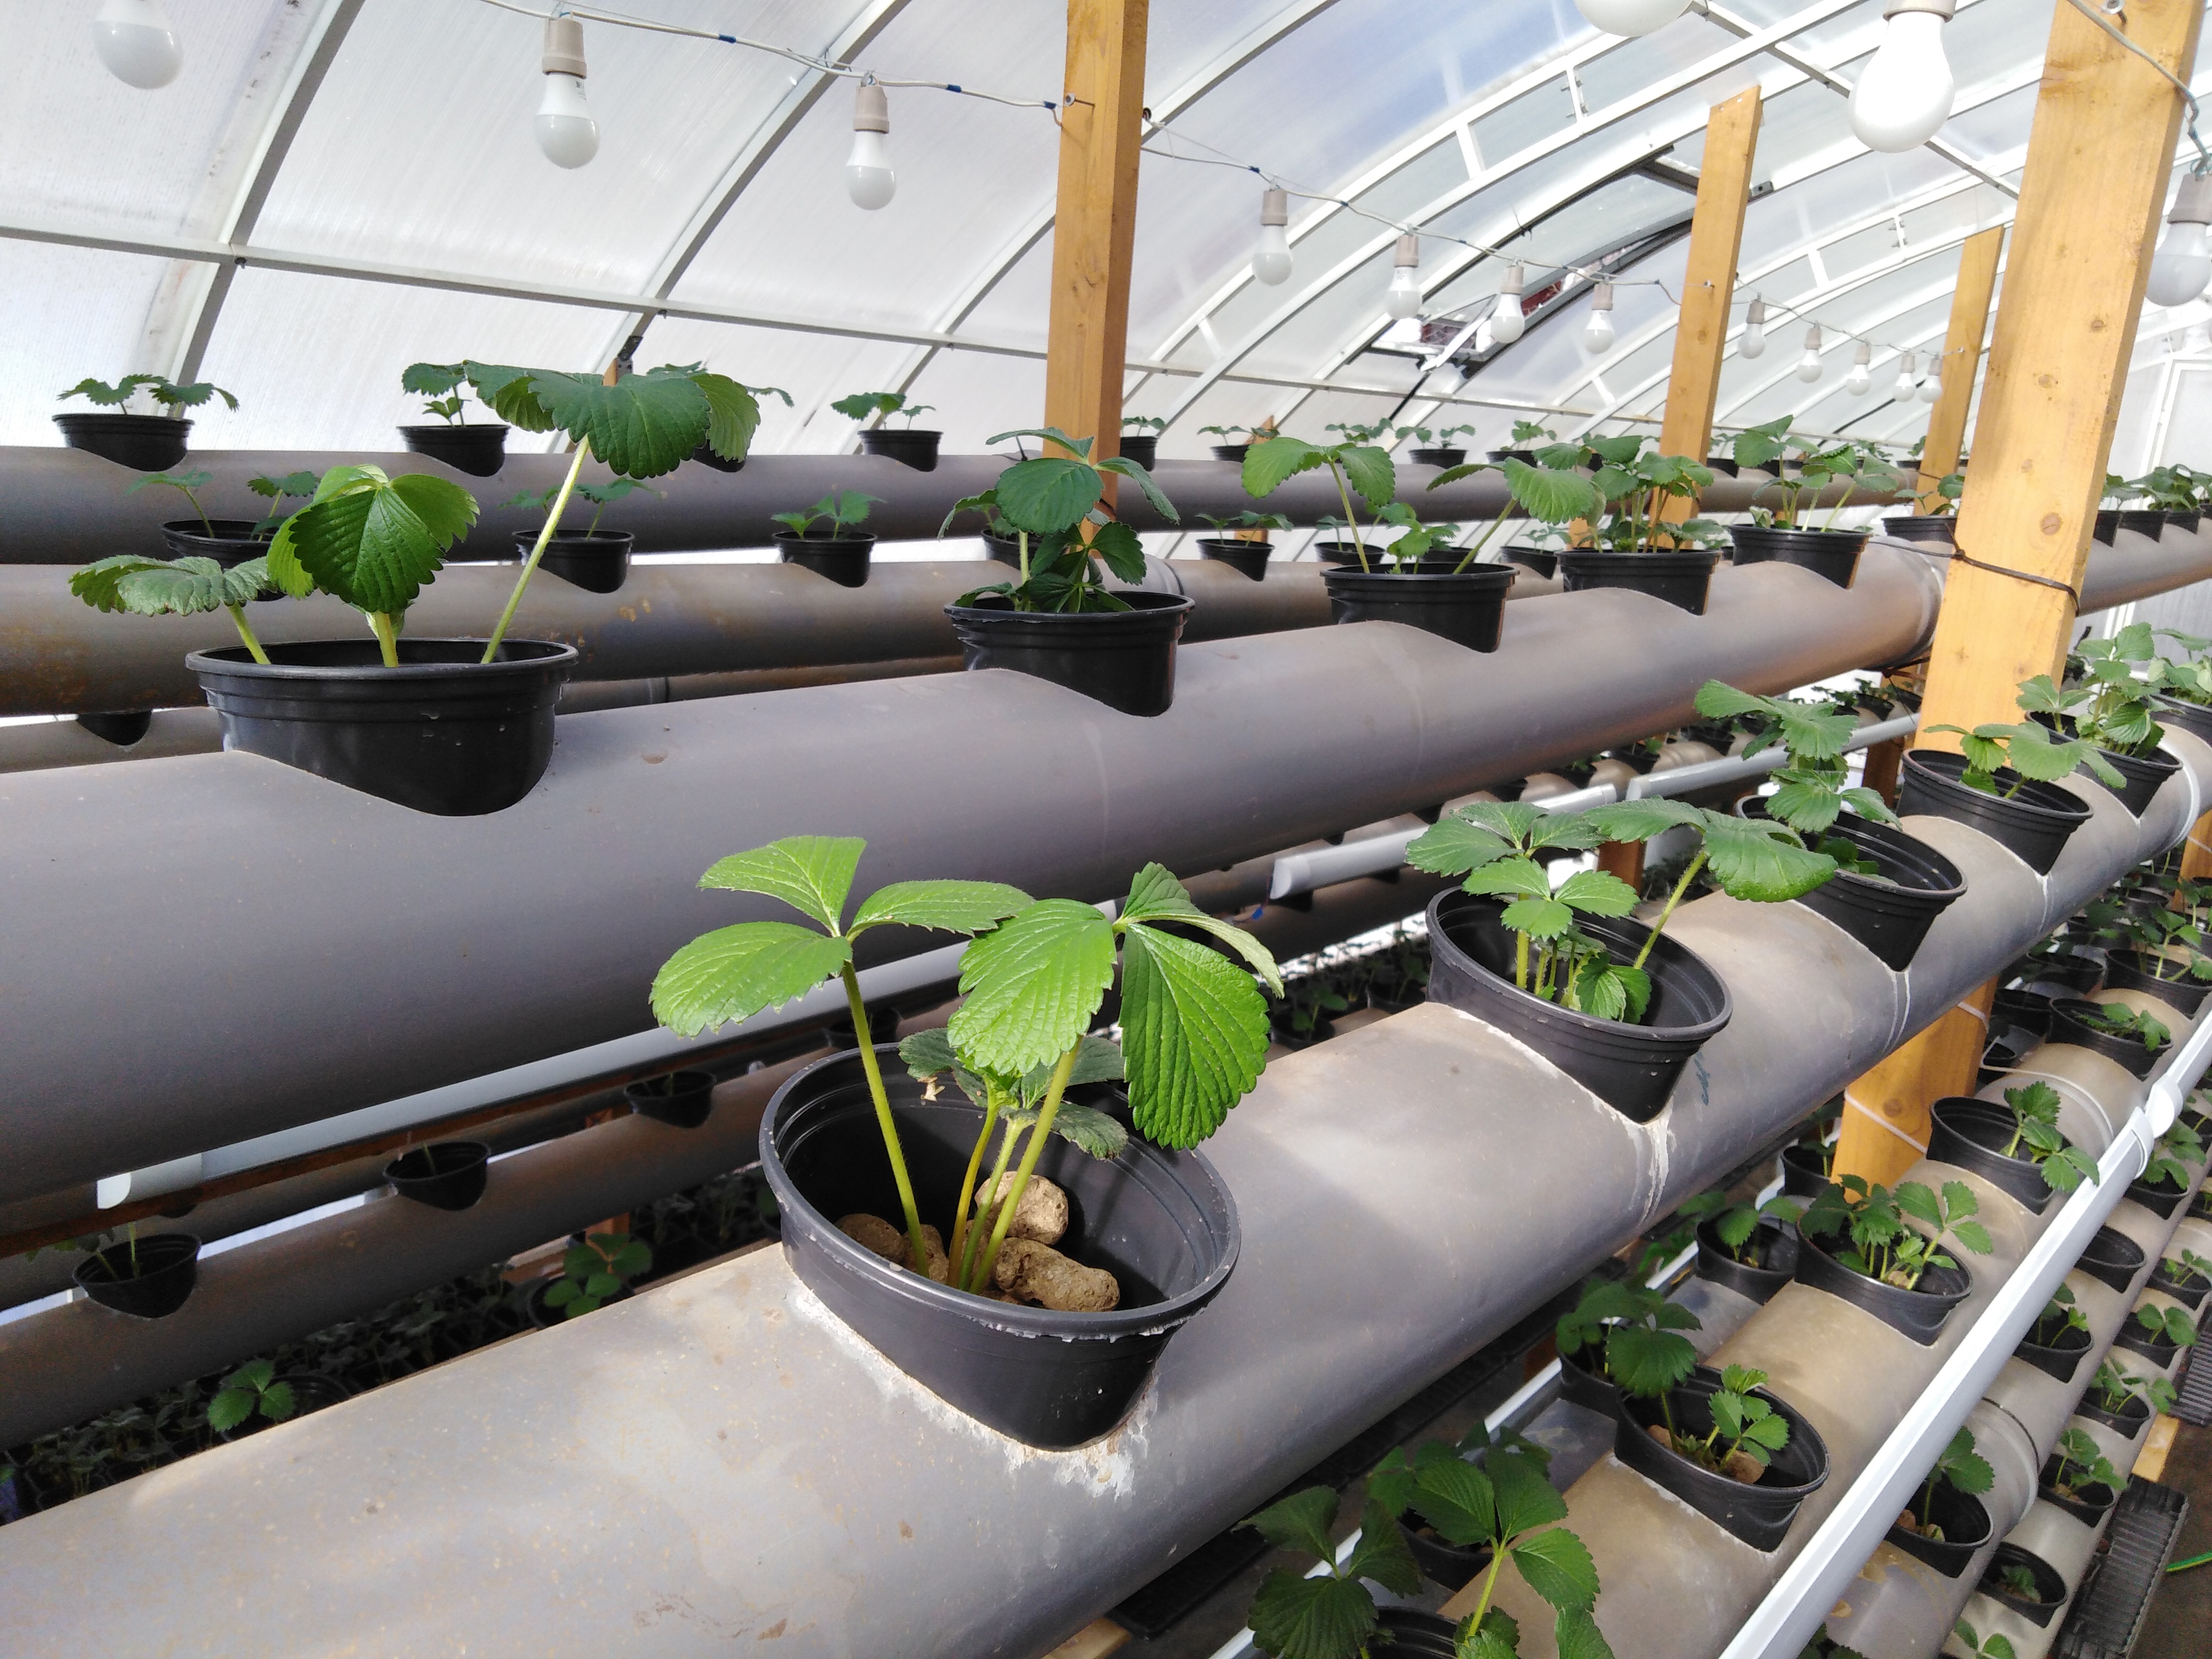 Выращивание клубники в теплице: круглый год зимой и летом для продажи, примерный бизнес план и технология, а также выбор сортов